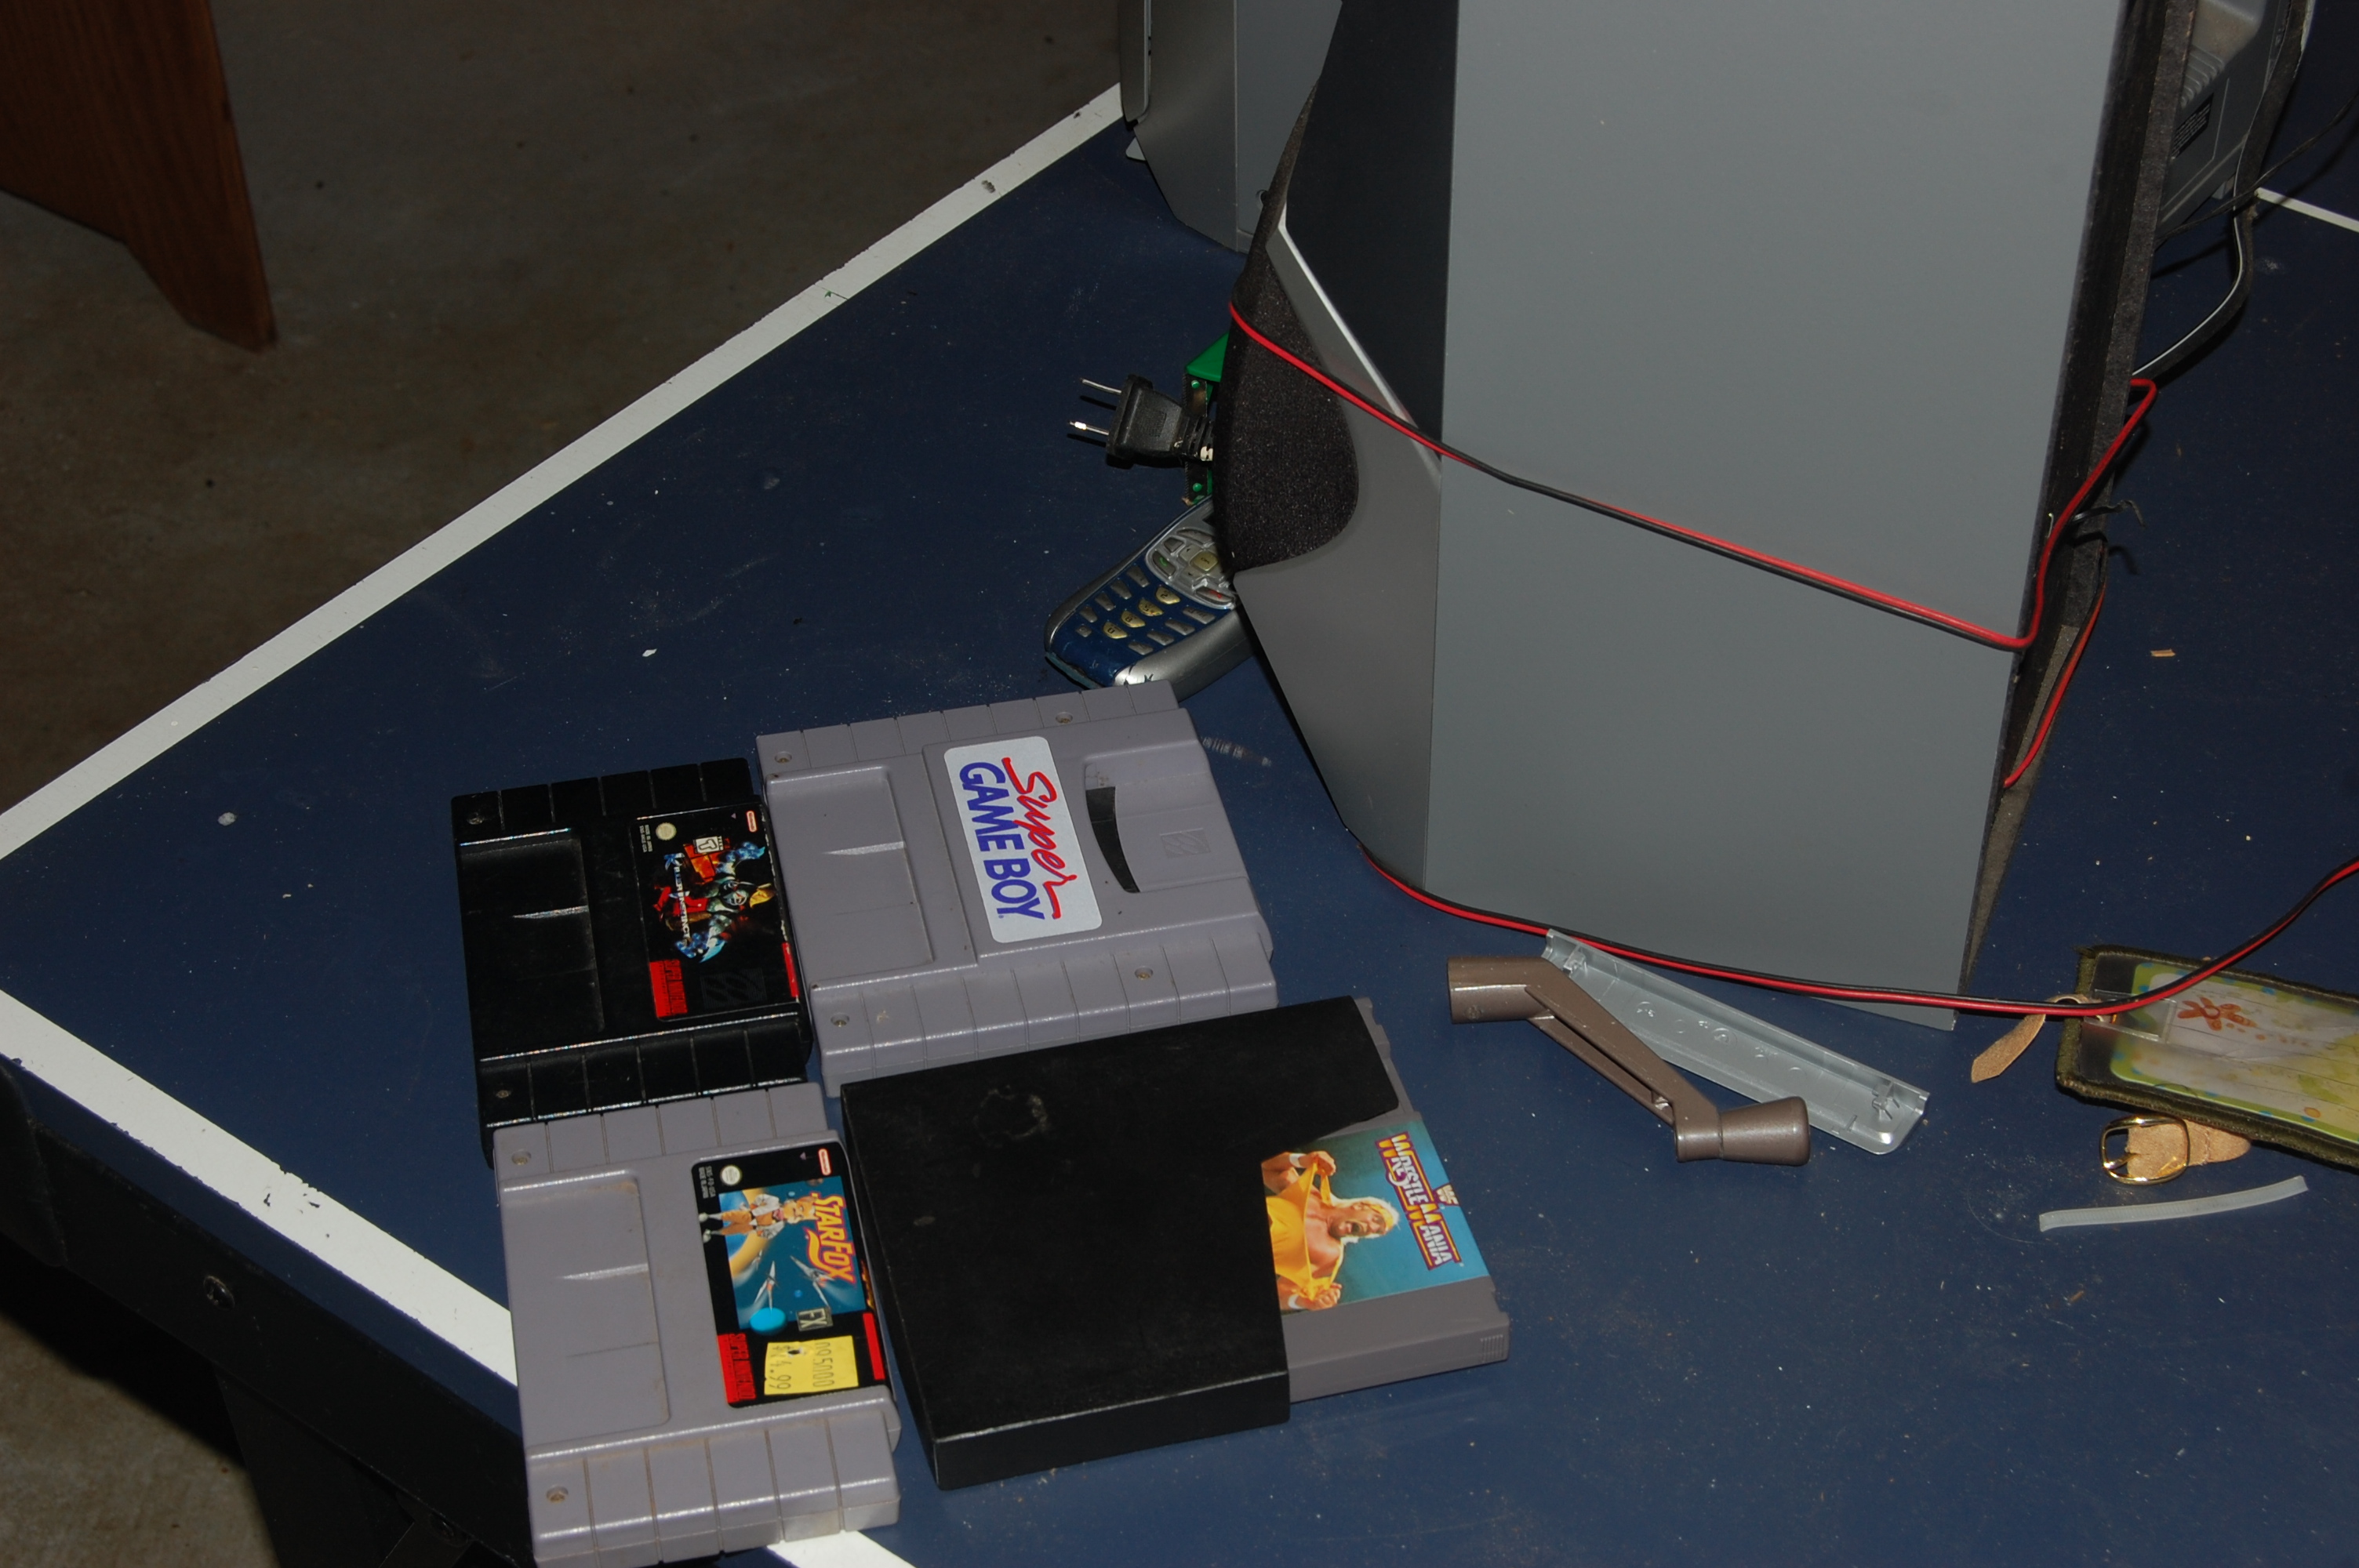 Super Nintendo SNES and Nintendo NES games